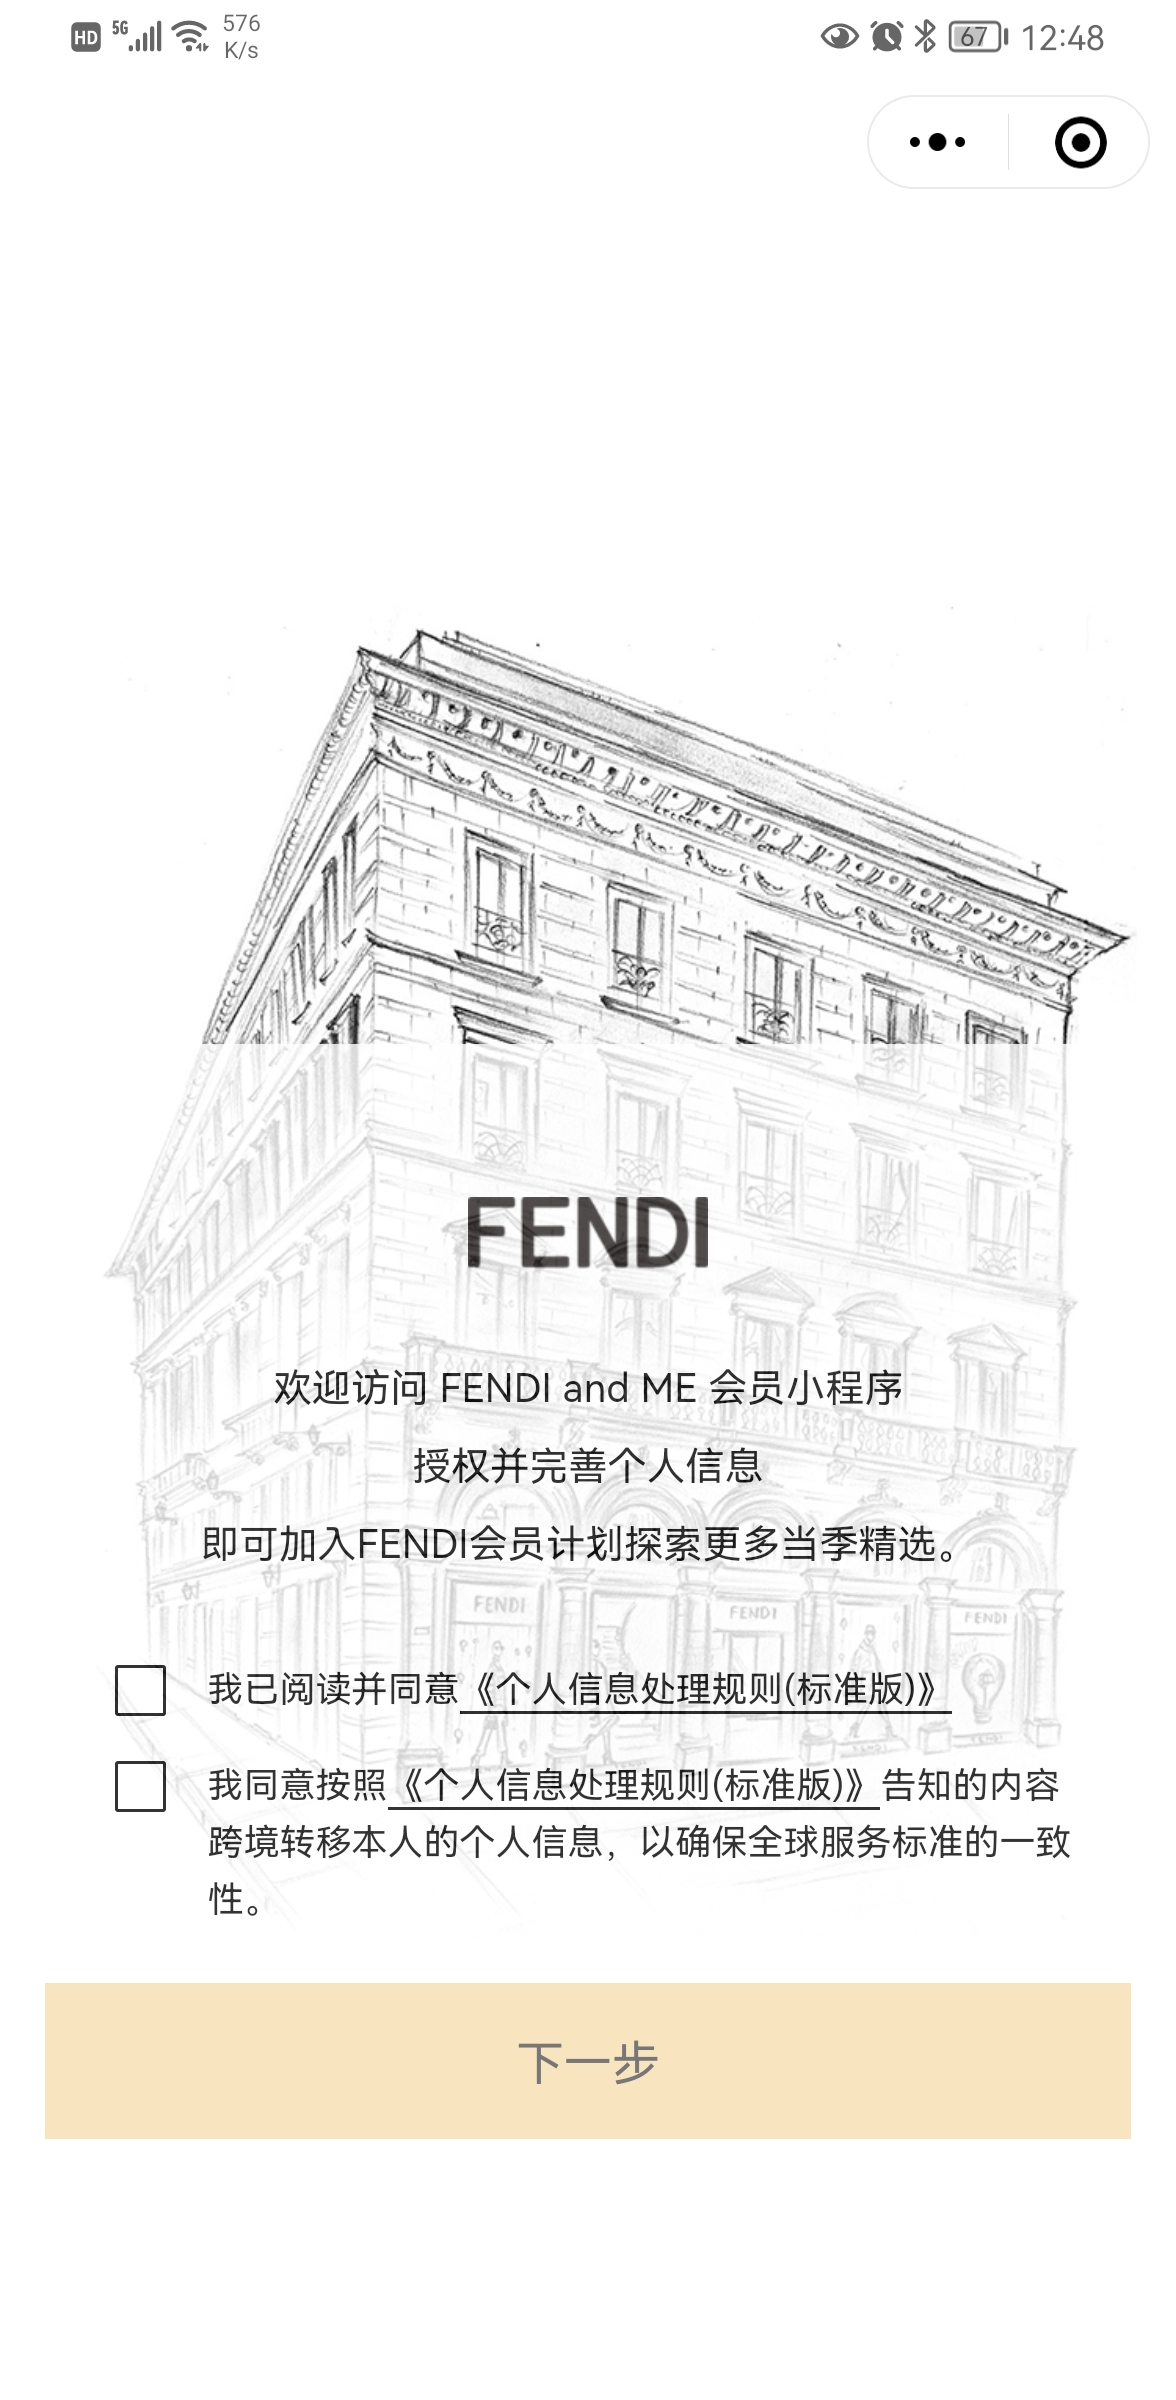 FENDI and ME小程序